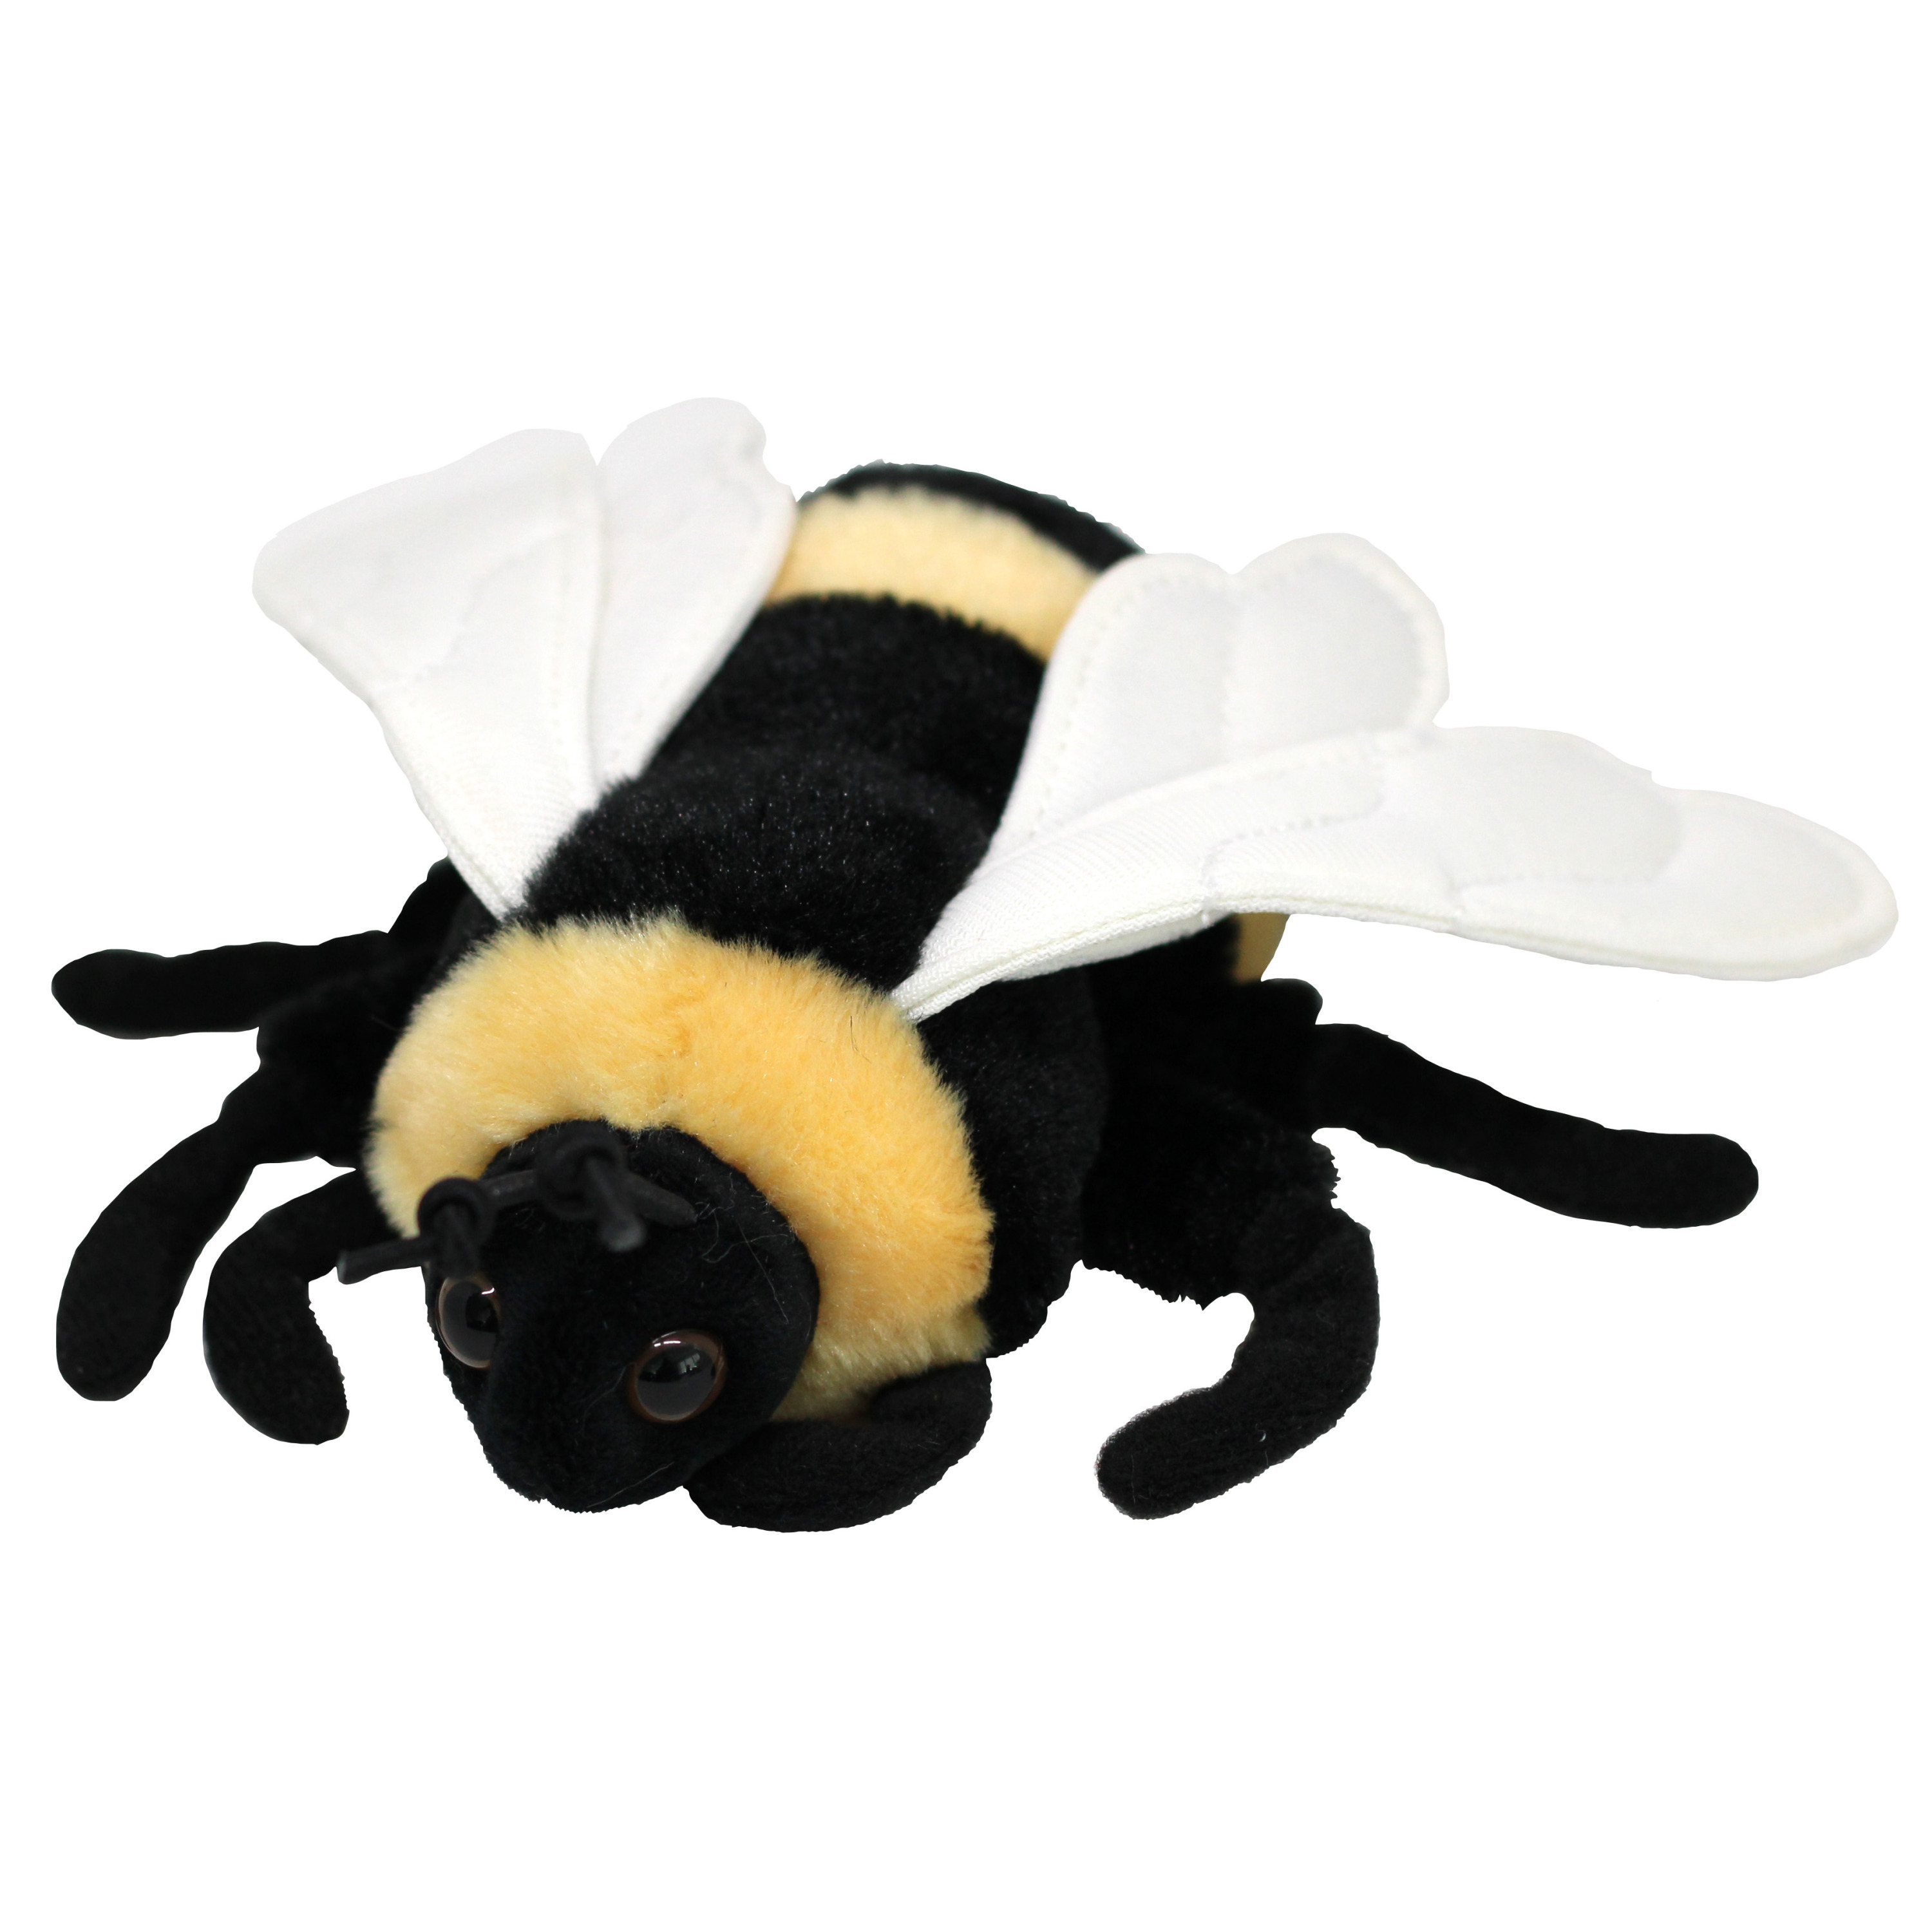 Nature Planet Knuffeldier Honingbij bijen pluche stof premium knuffels geel zwart 15 cm